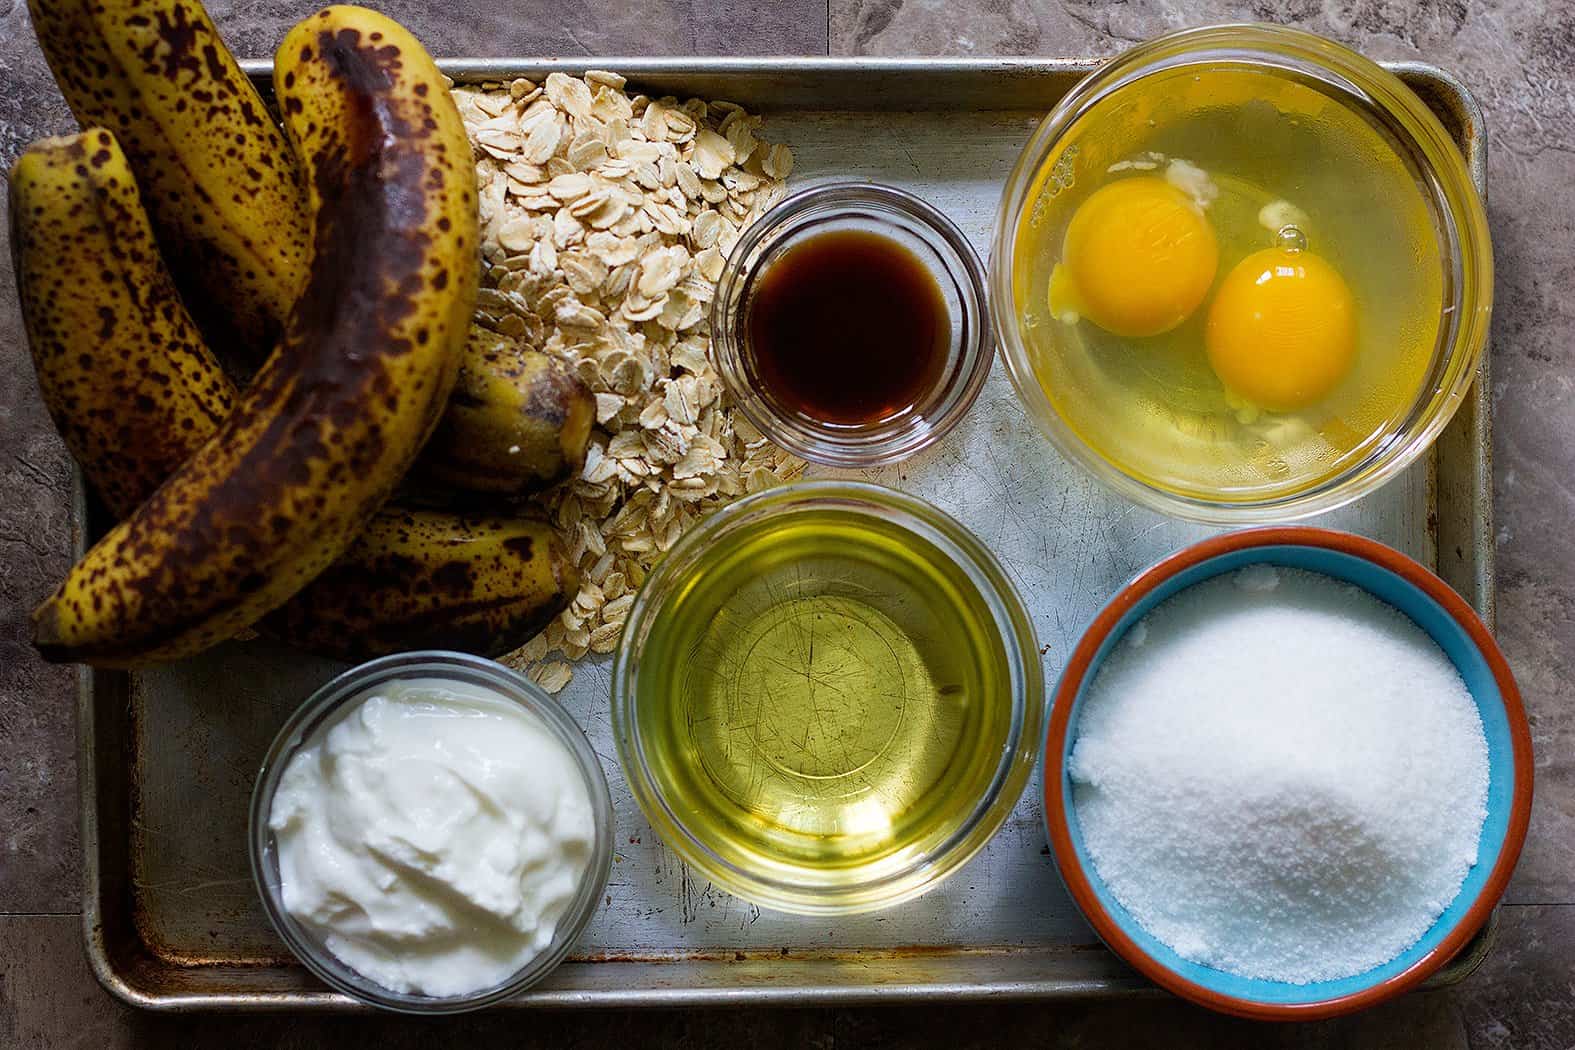 For oatmeal banana bread recipe, you need bananas, oatmeal, flour, yogurt, eggs, vanilla, vegetable oil. 